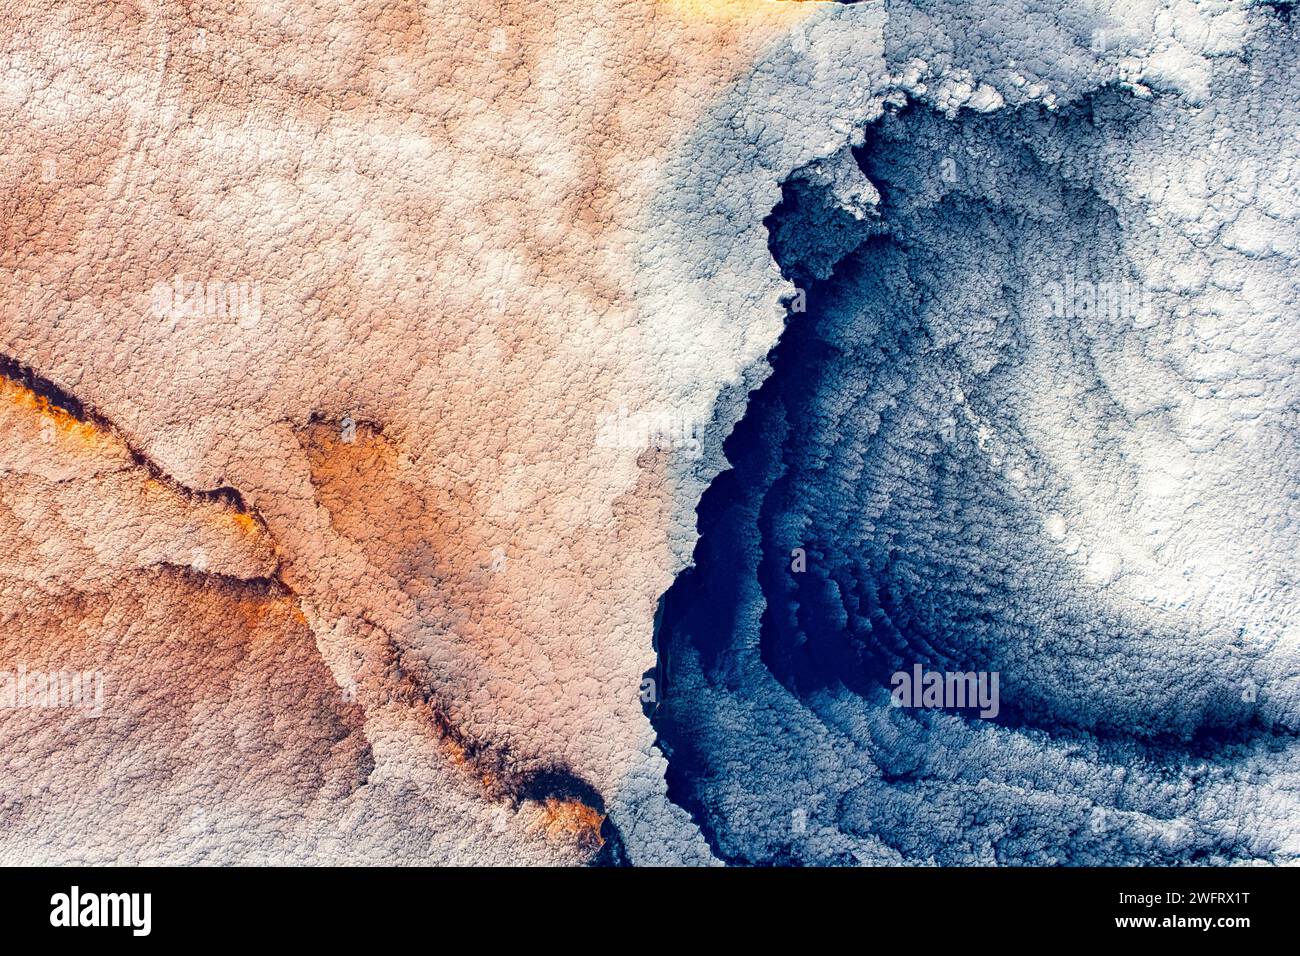 Nuvola o paesaggio nuvoloso insoliti in Lybia. Miglioramento digitale di un'immagine della NASA. Foto Stock